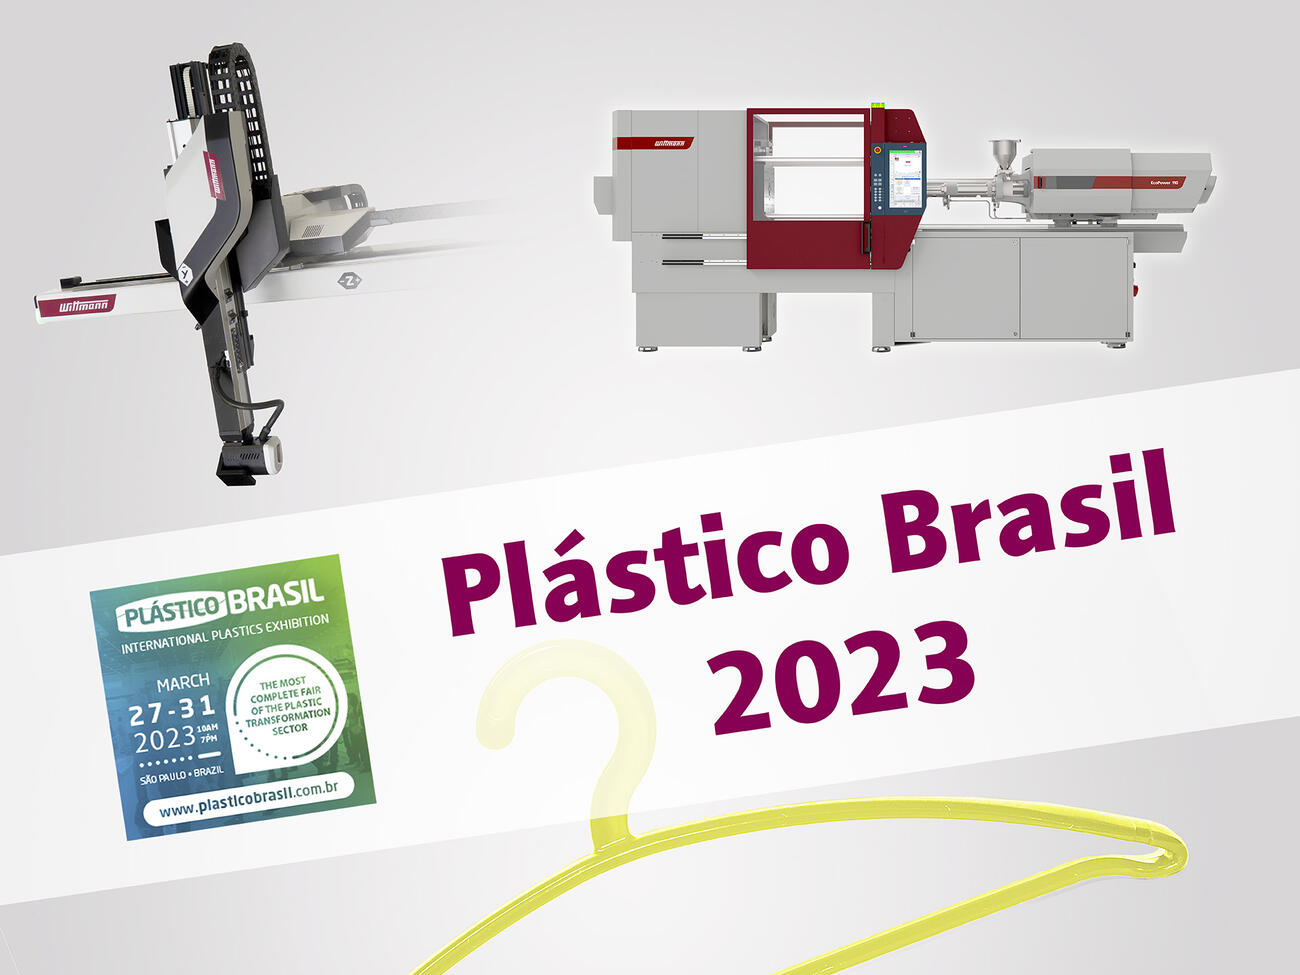 Plastico Brasil 2023